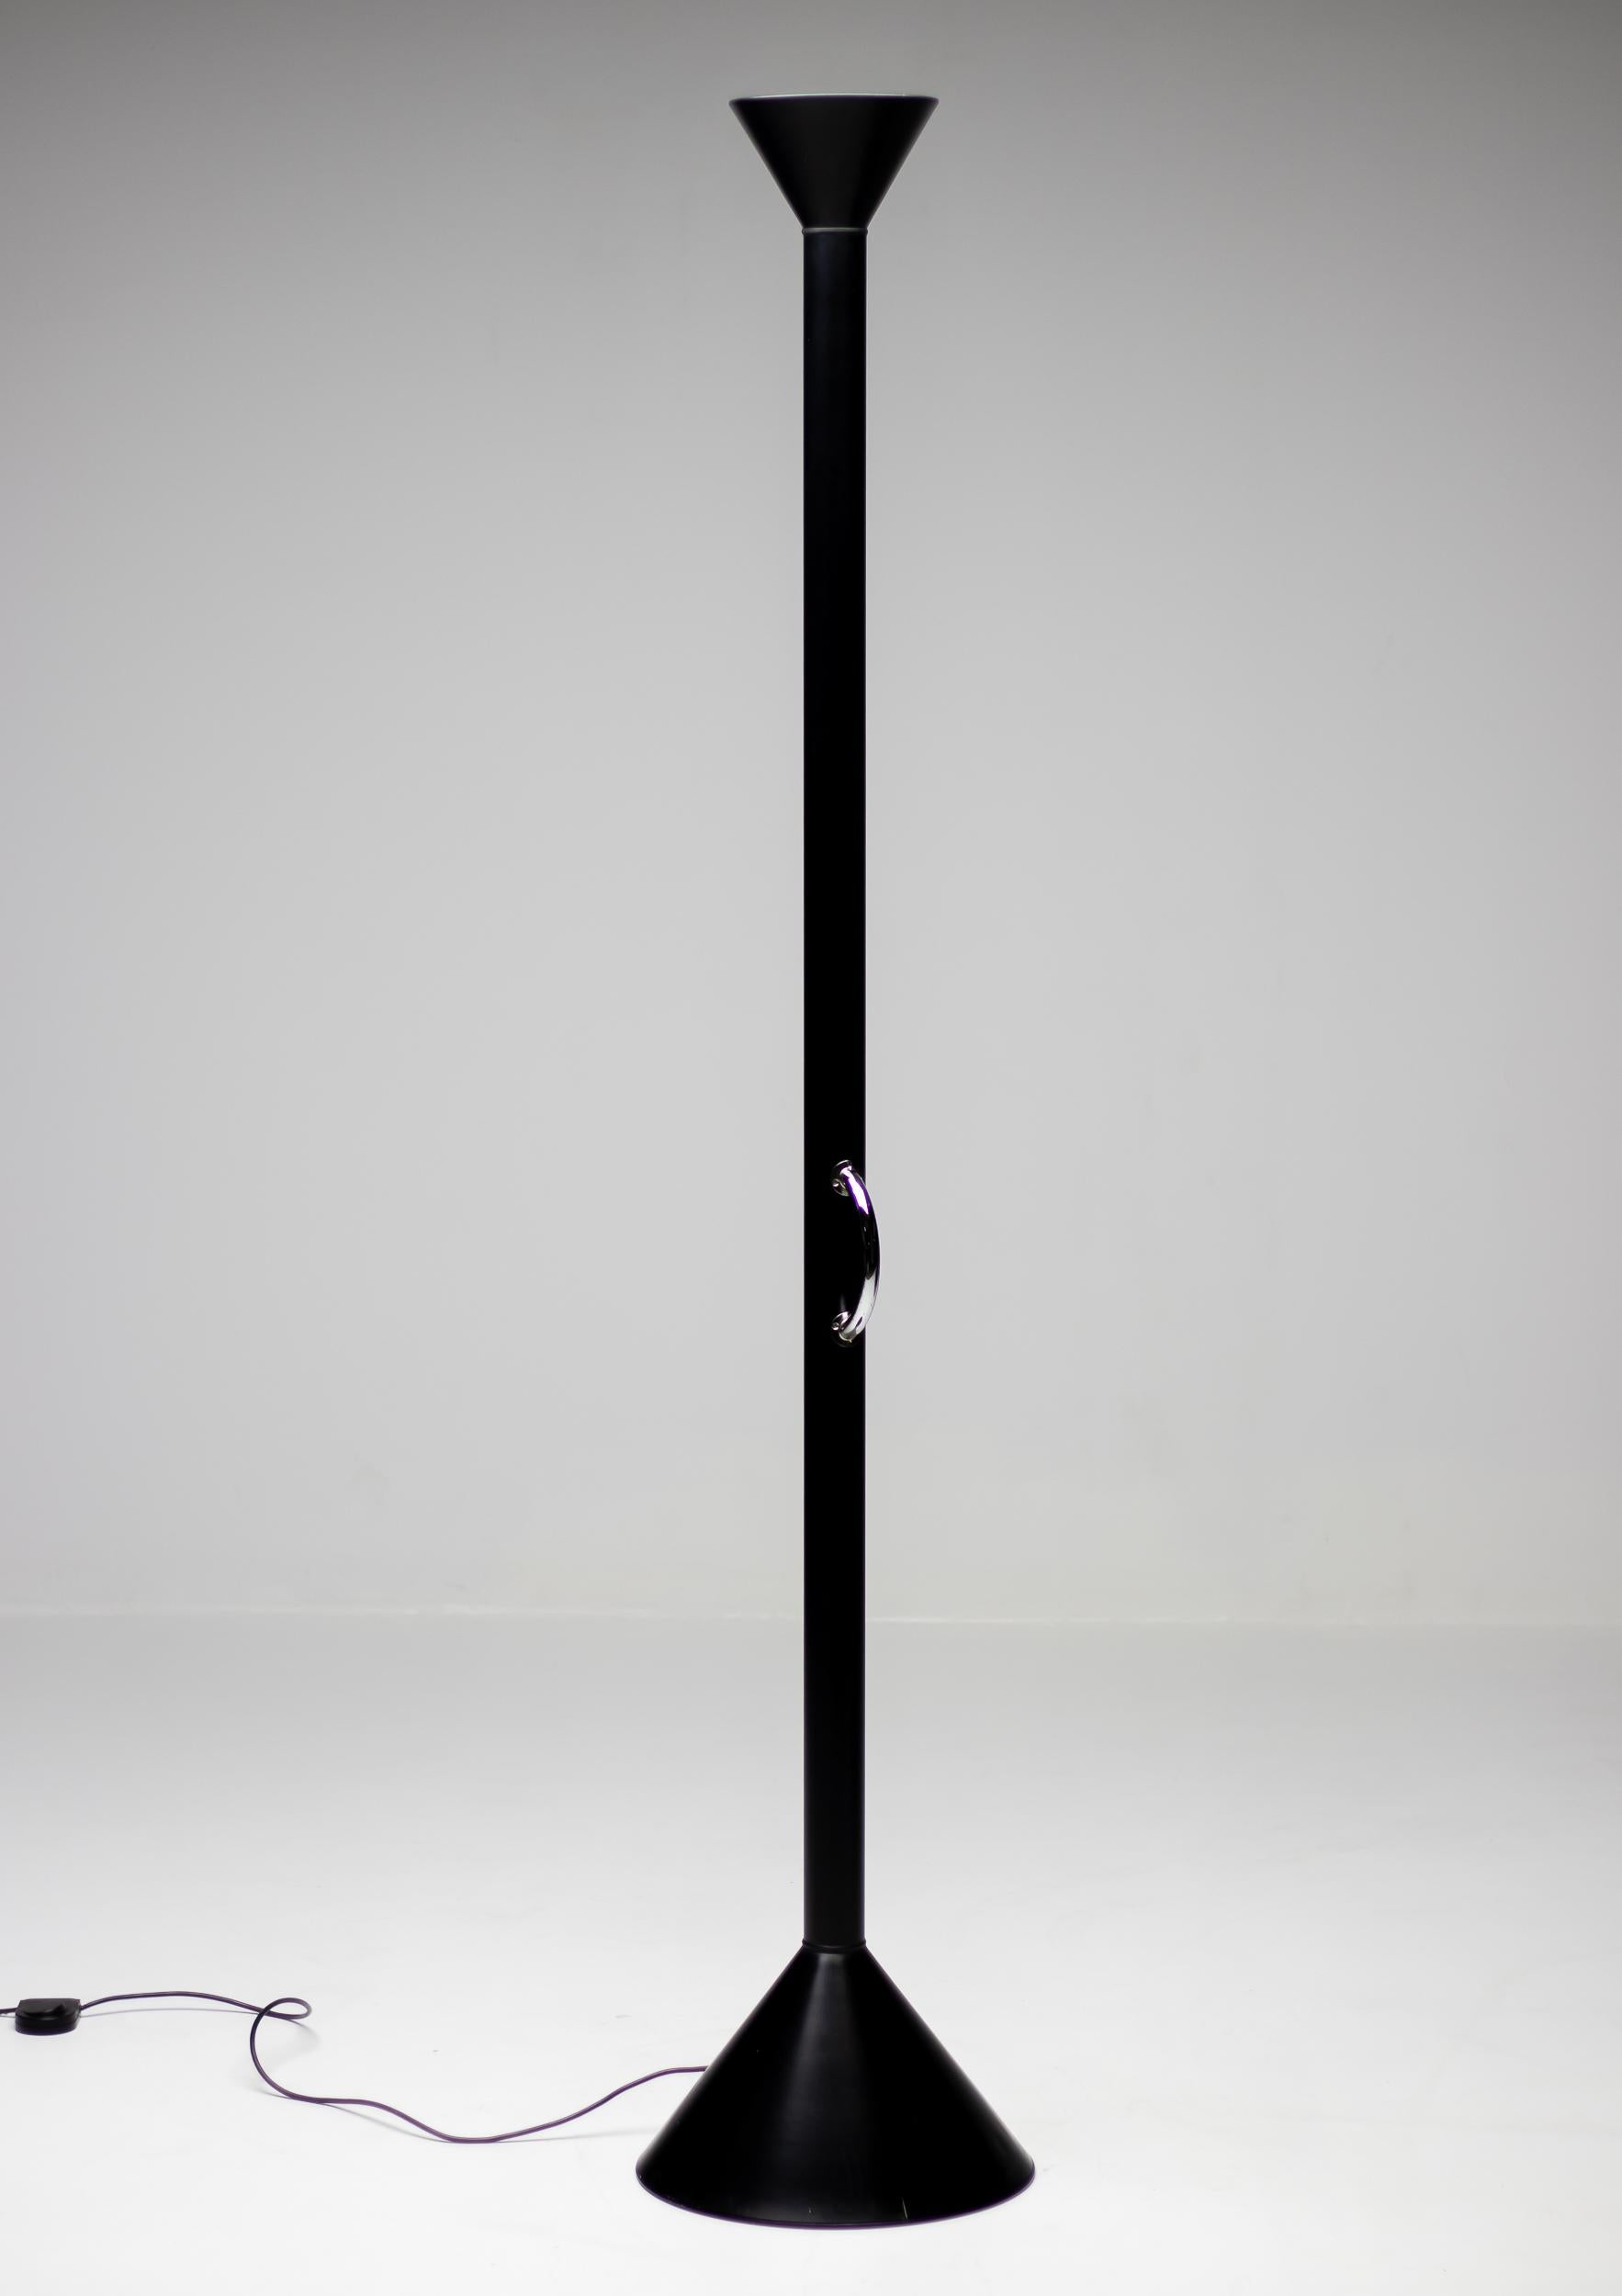 Callimaco Stehleuchte von Ettore Sottsass in limitierter Auflage in schwarz.
Callimaco wurde 1982 von Ettore Sottsass für Artemide entworfen und wurde zu einer echten Ikone der 1980er Jahre.
Die Leuchte verzichtet auf alle unnötigen Teile und